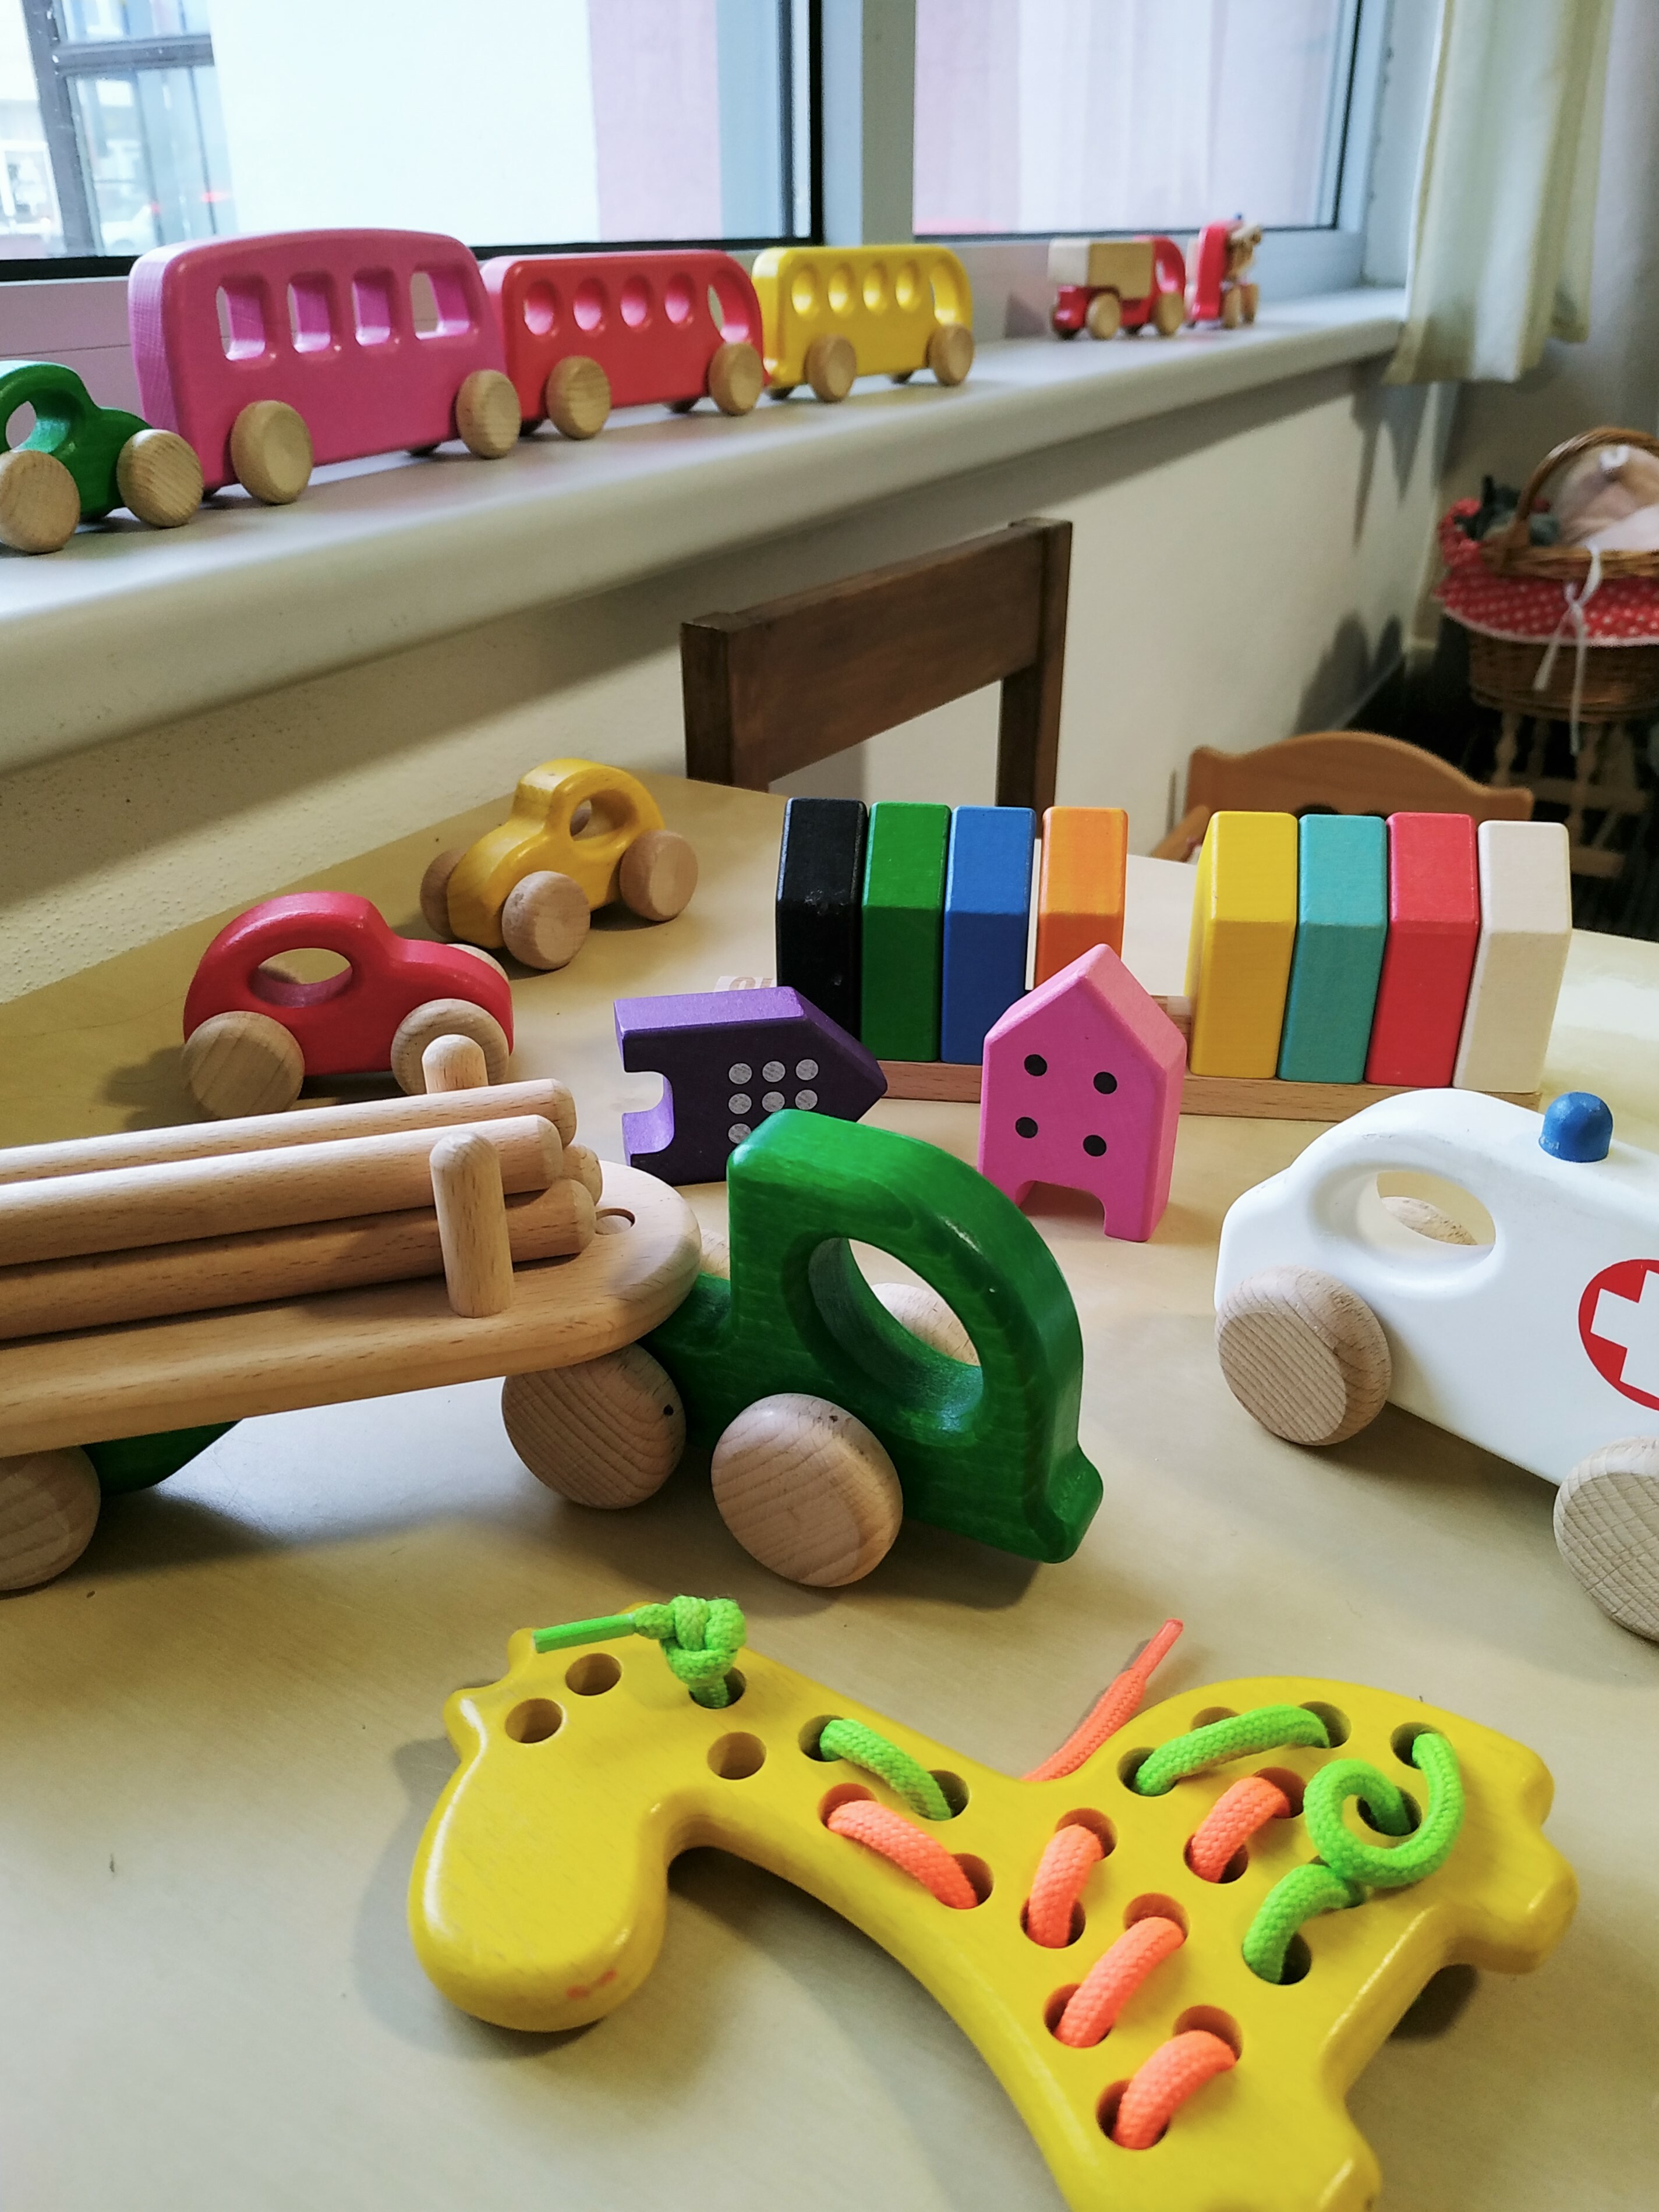 Dětský koutek s montessori hračkami. Děti se během nákupu zabaví a zároveň se učí. Tisíce spokojených rodičů :-)